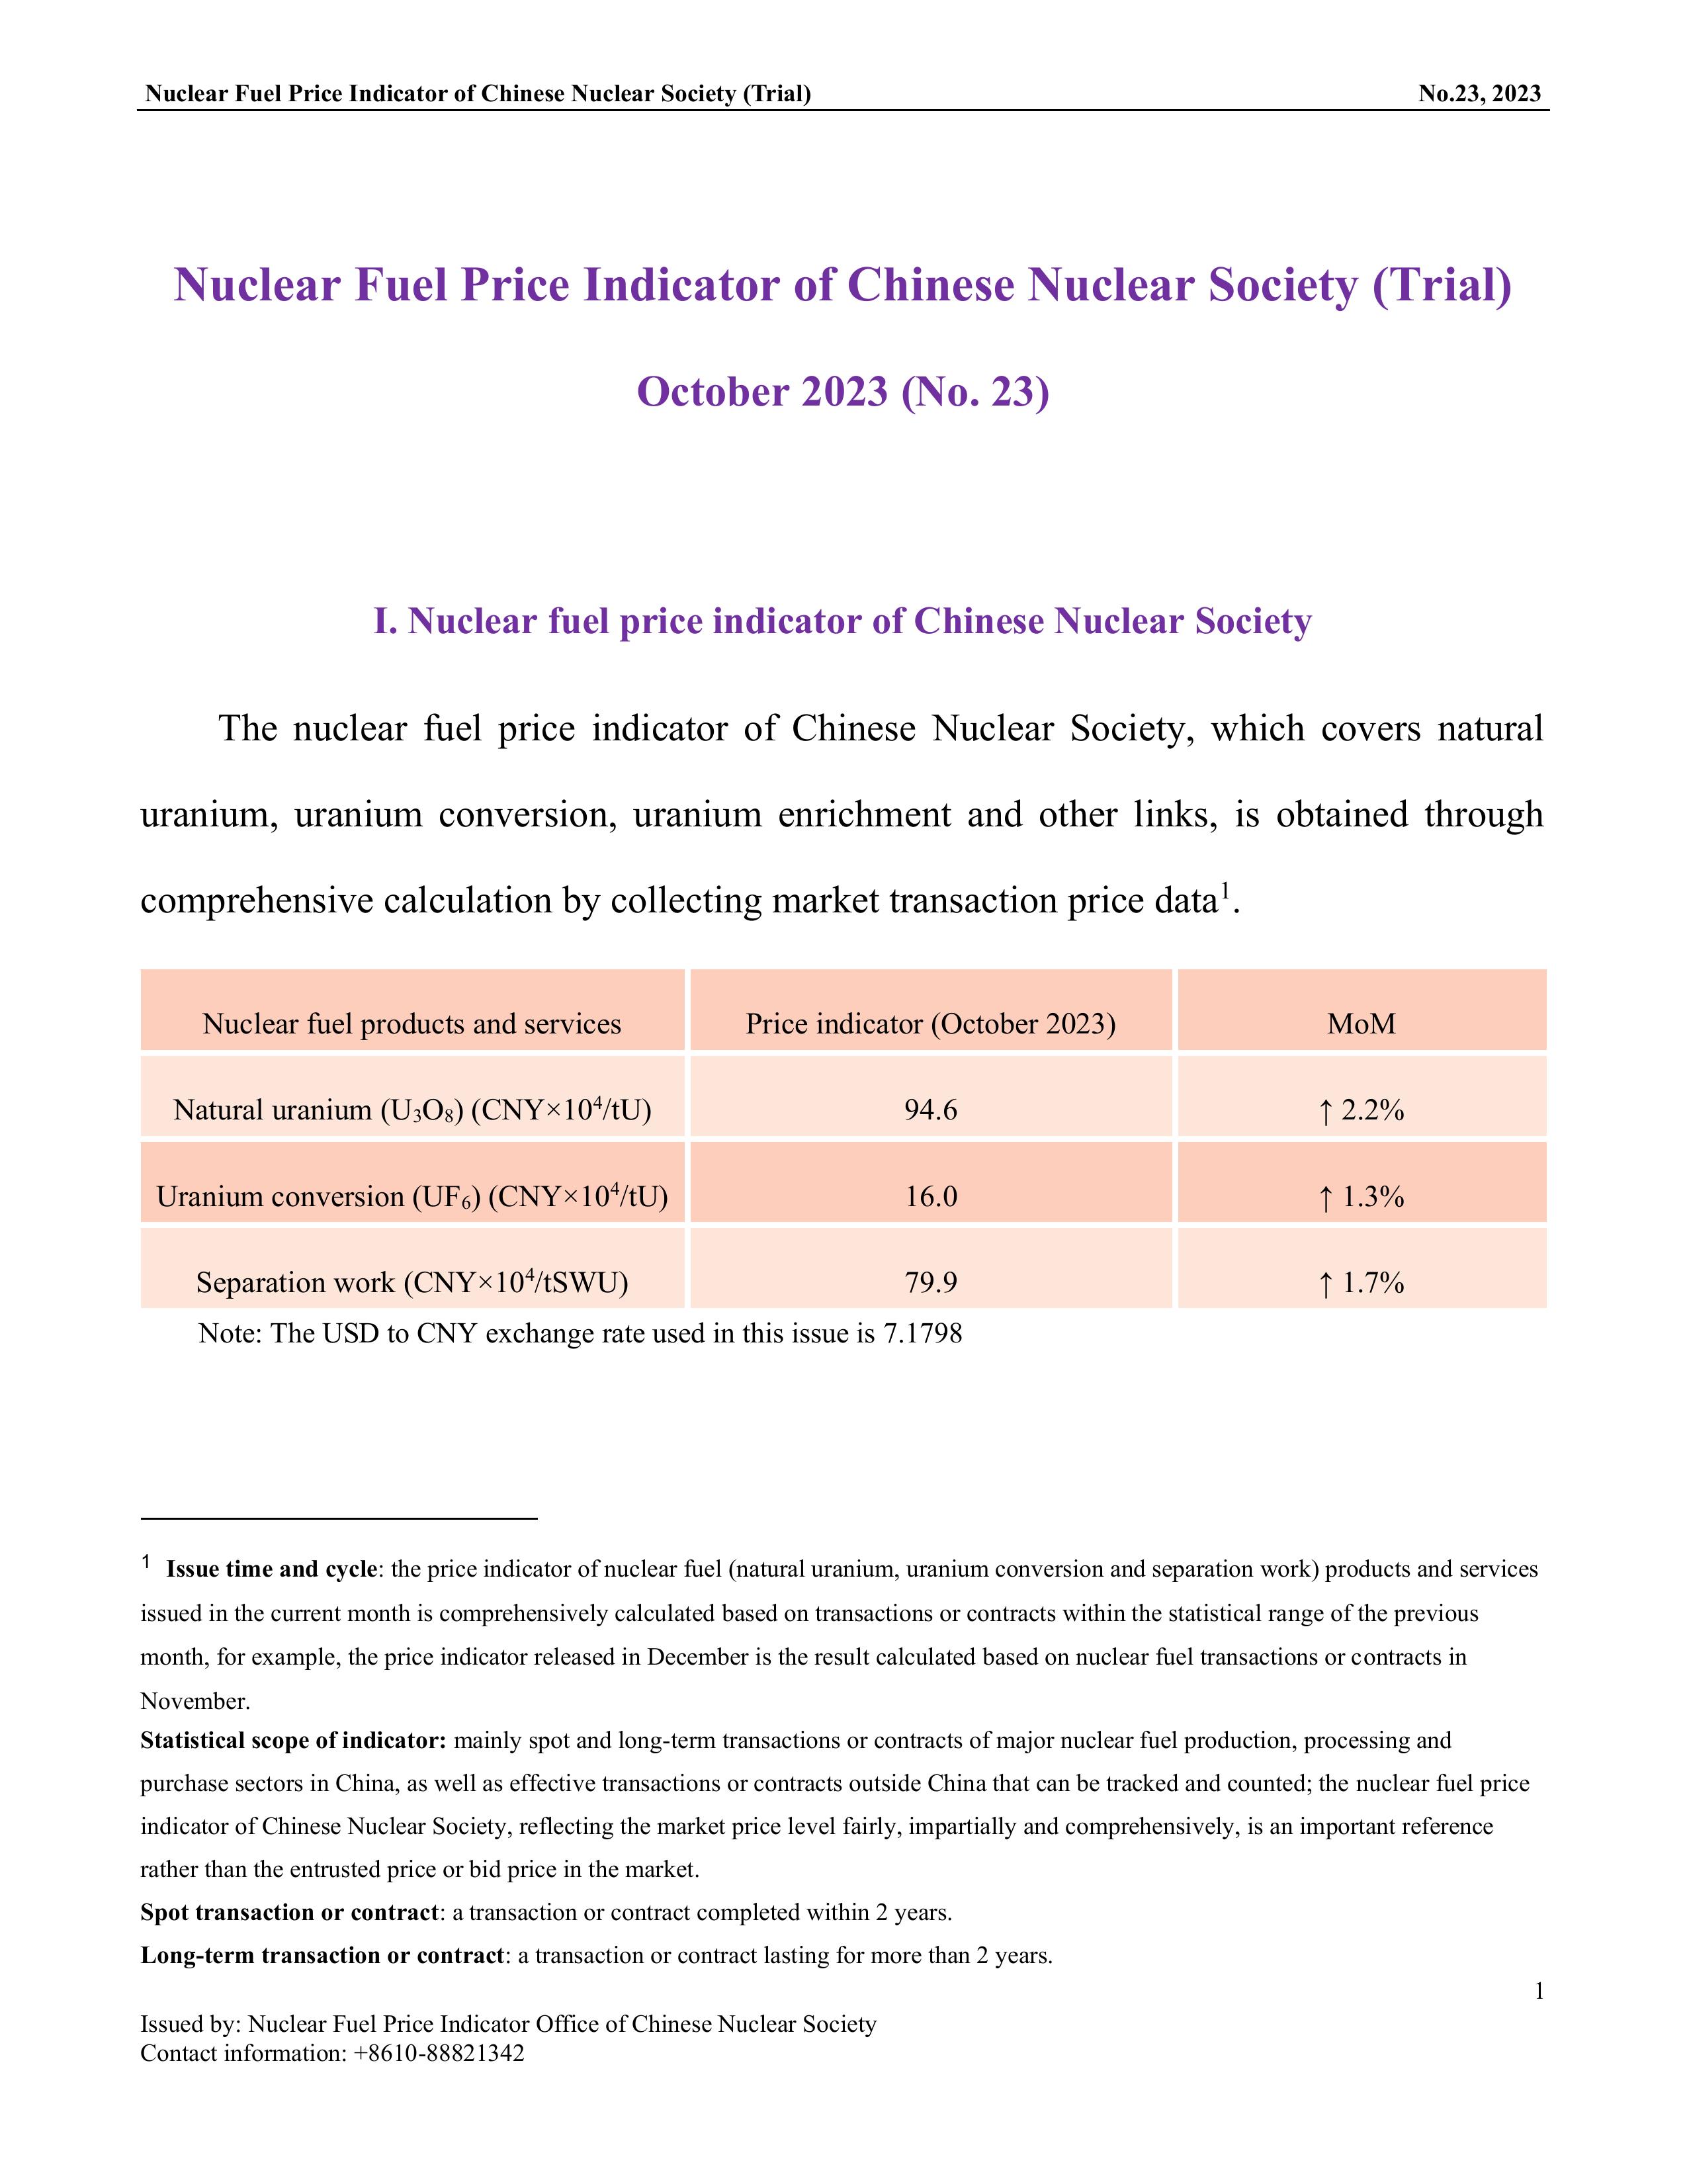 中国核学会核燃料价格指数(试运行)（2023年10月,总第23期）_EN_final-1.jpg